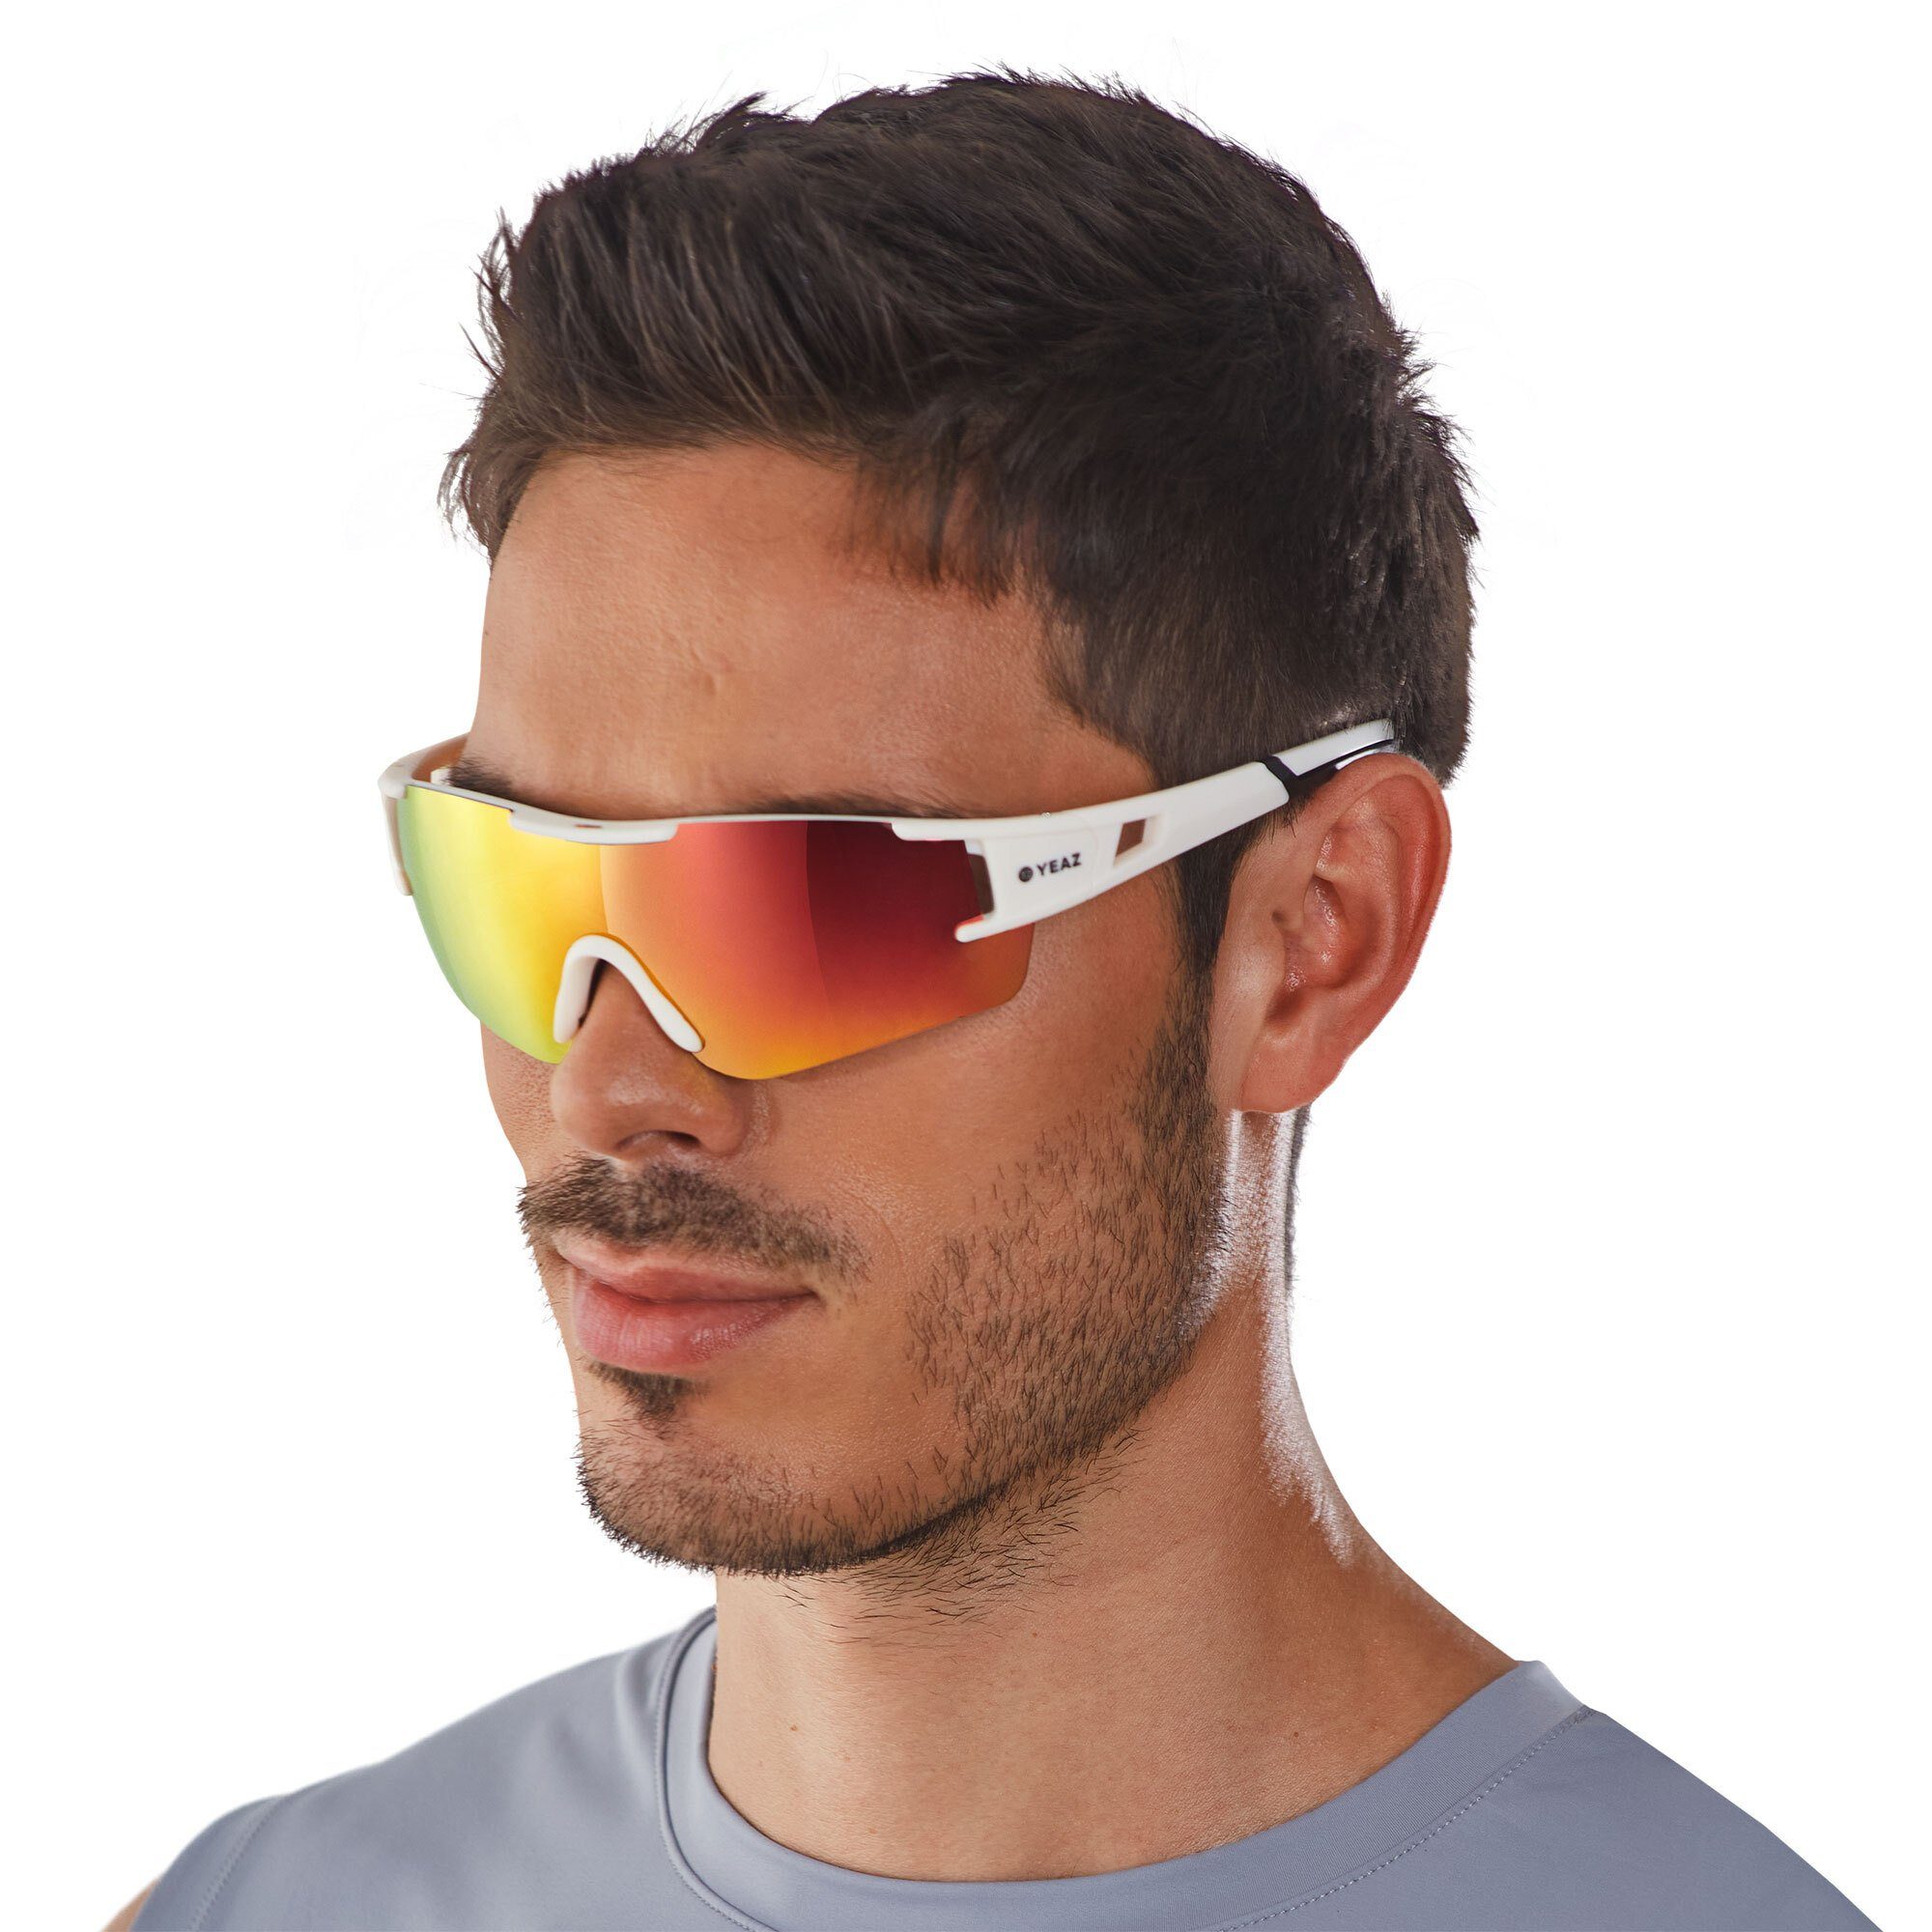 YEAZ Sportbrille SUNBLOW sport-sonnenbrille creme white/pink, Guter Schutz  bei optimierter Sicht